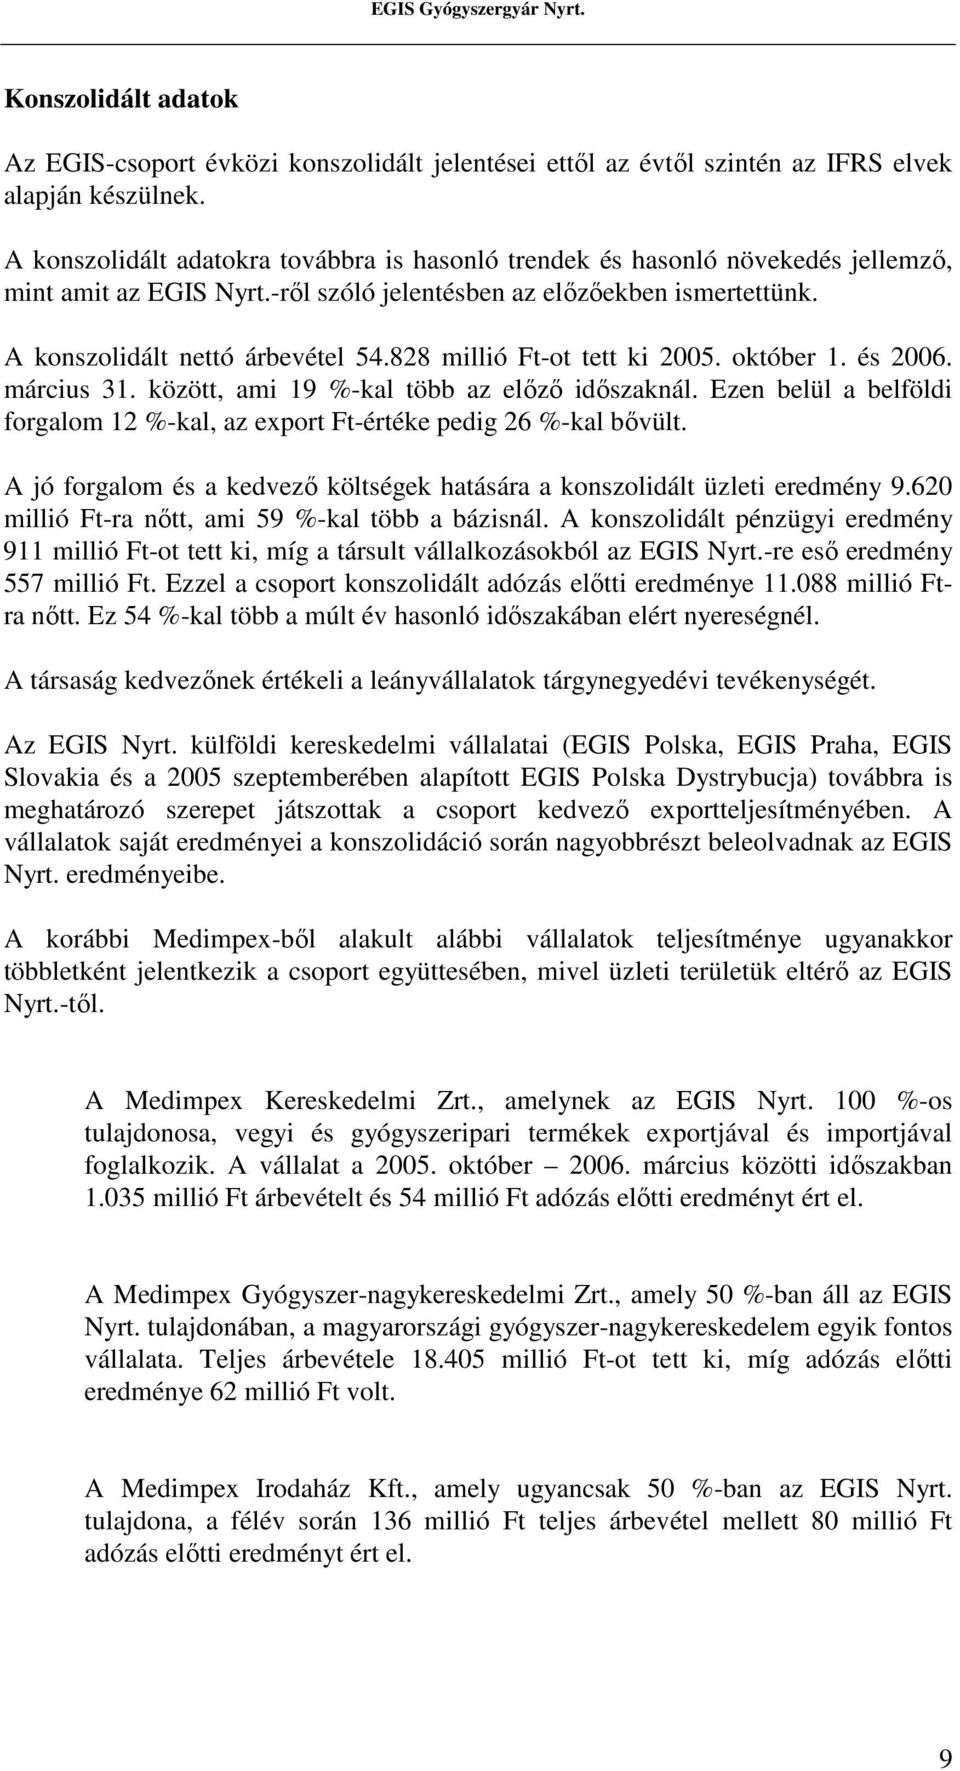 828 millió Ft-ot tett ki 2005. október 1. és 2006. március 31. között, ami 19 %-kal több az elızı idıszaknál. Ezen belül a belföldi forgalom 12 %-kal, az export Ft-értéke pedig 26 %-kal bıvült.